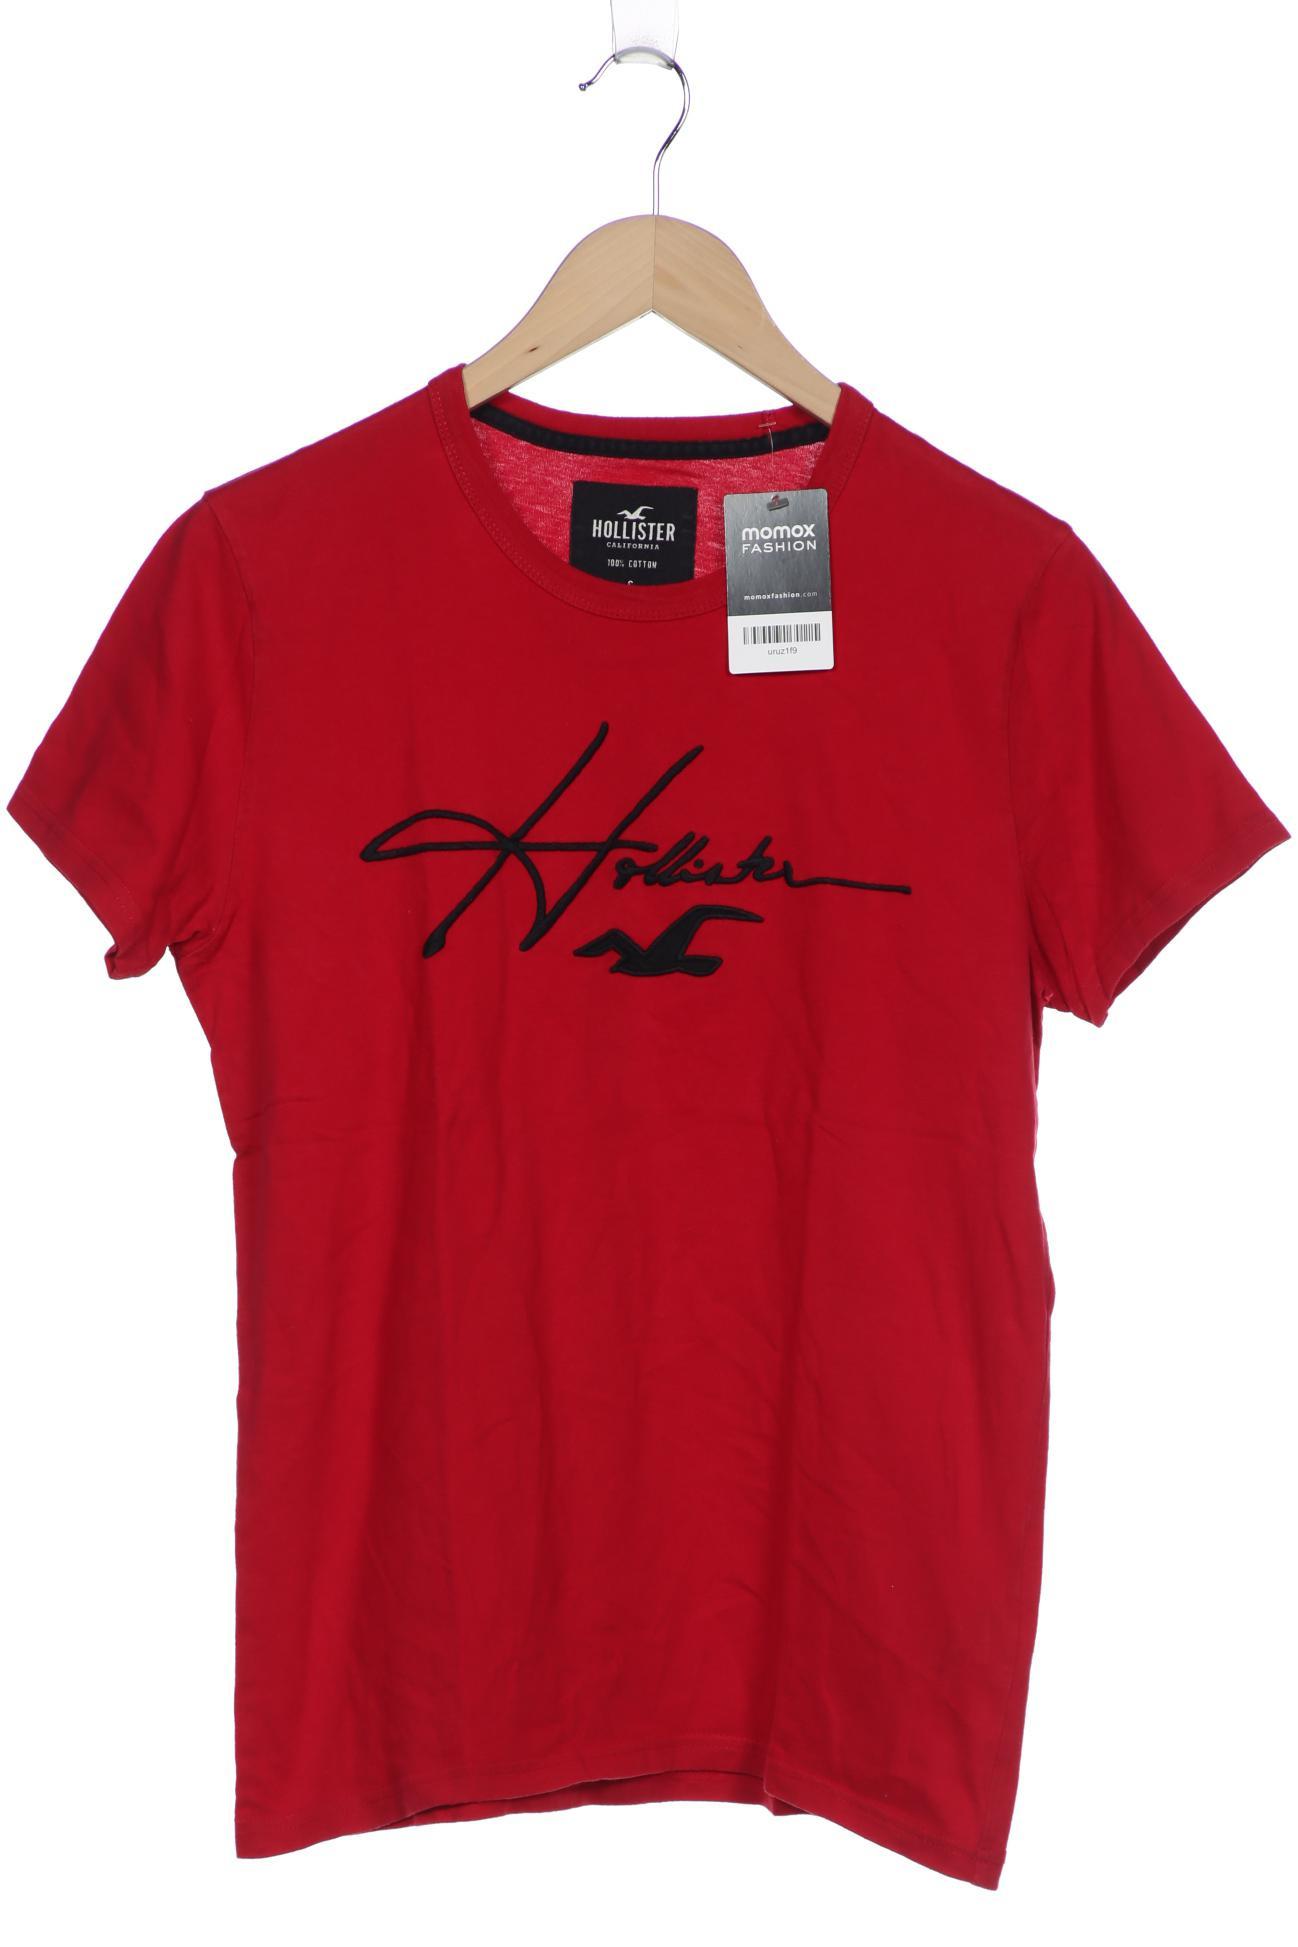 Hollister Herren T-Shirt, rot von Hollister